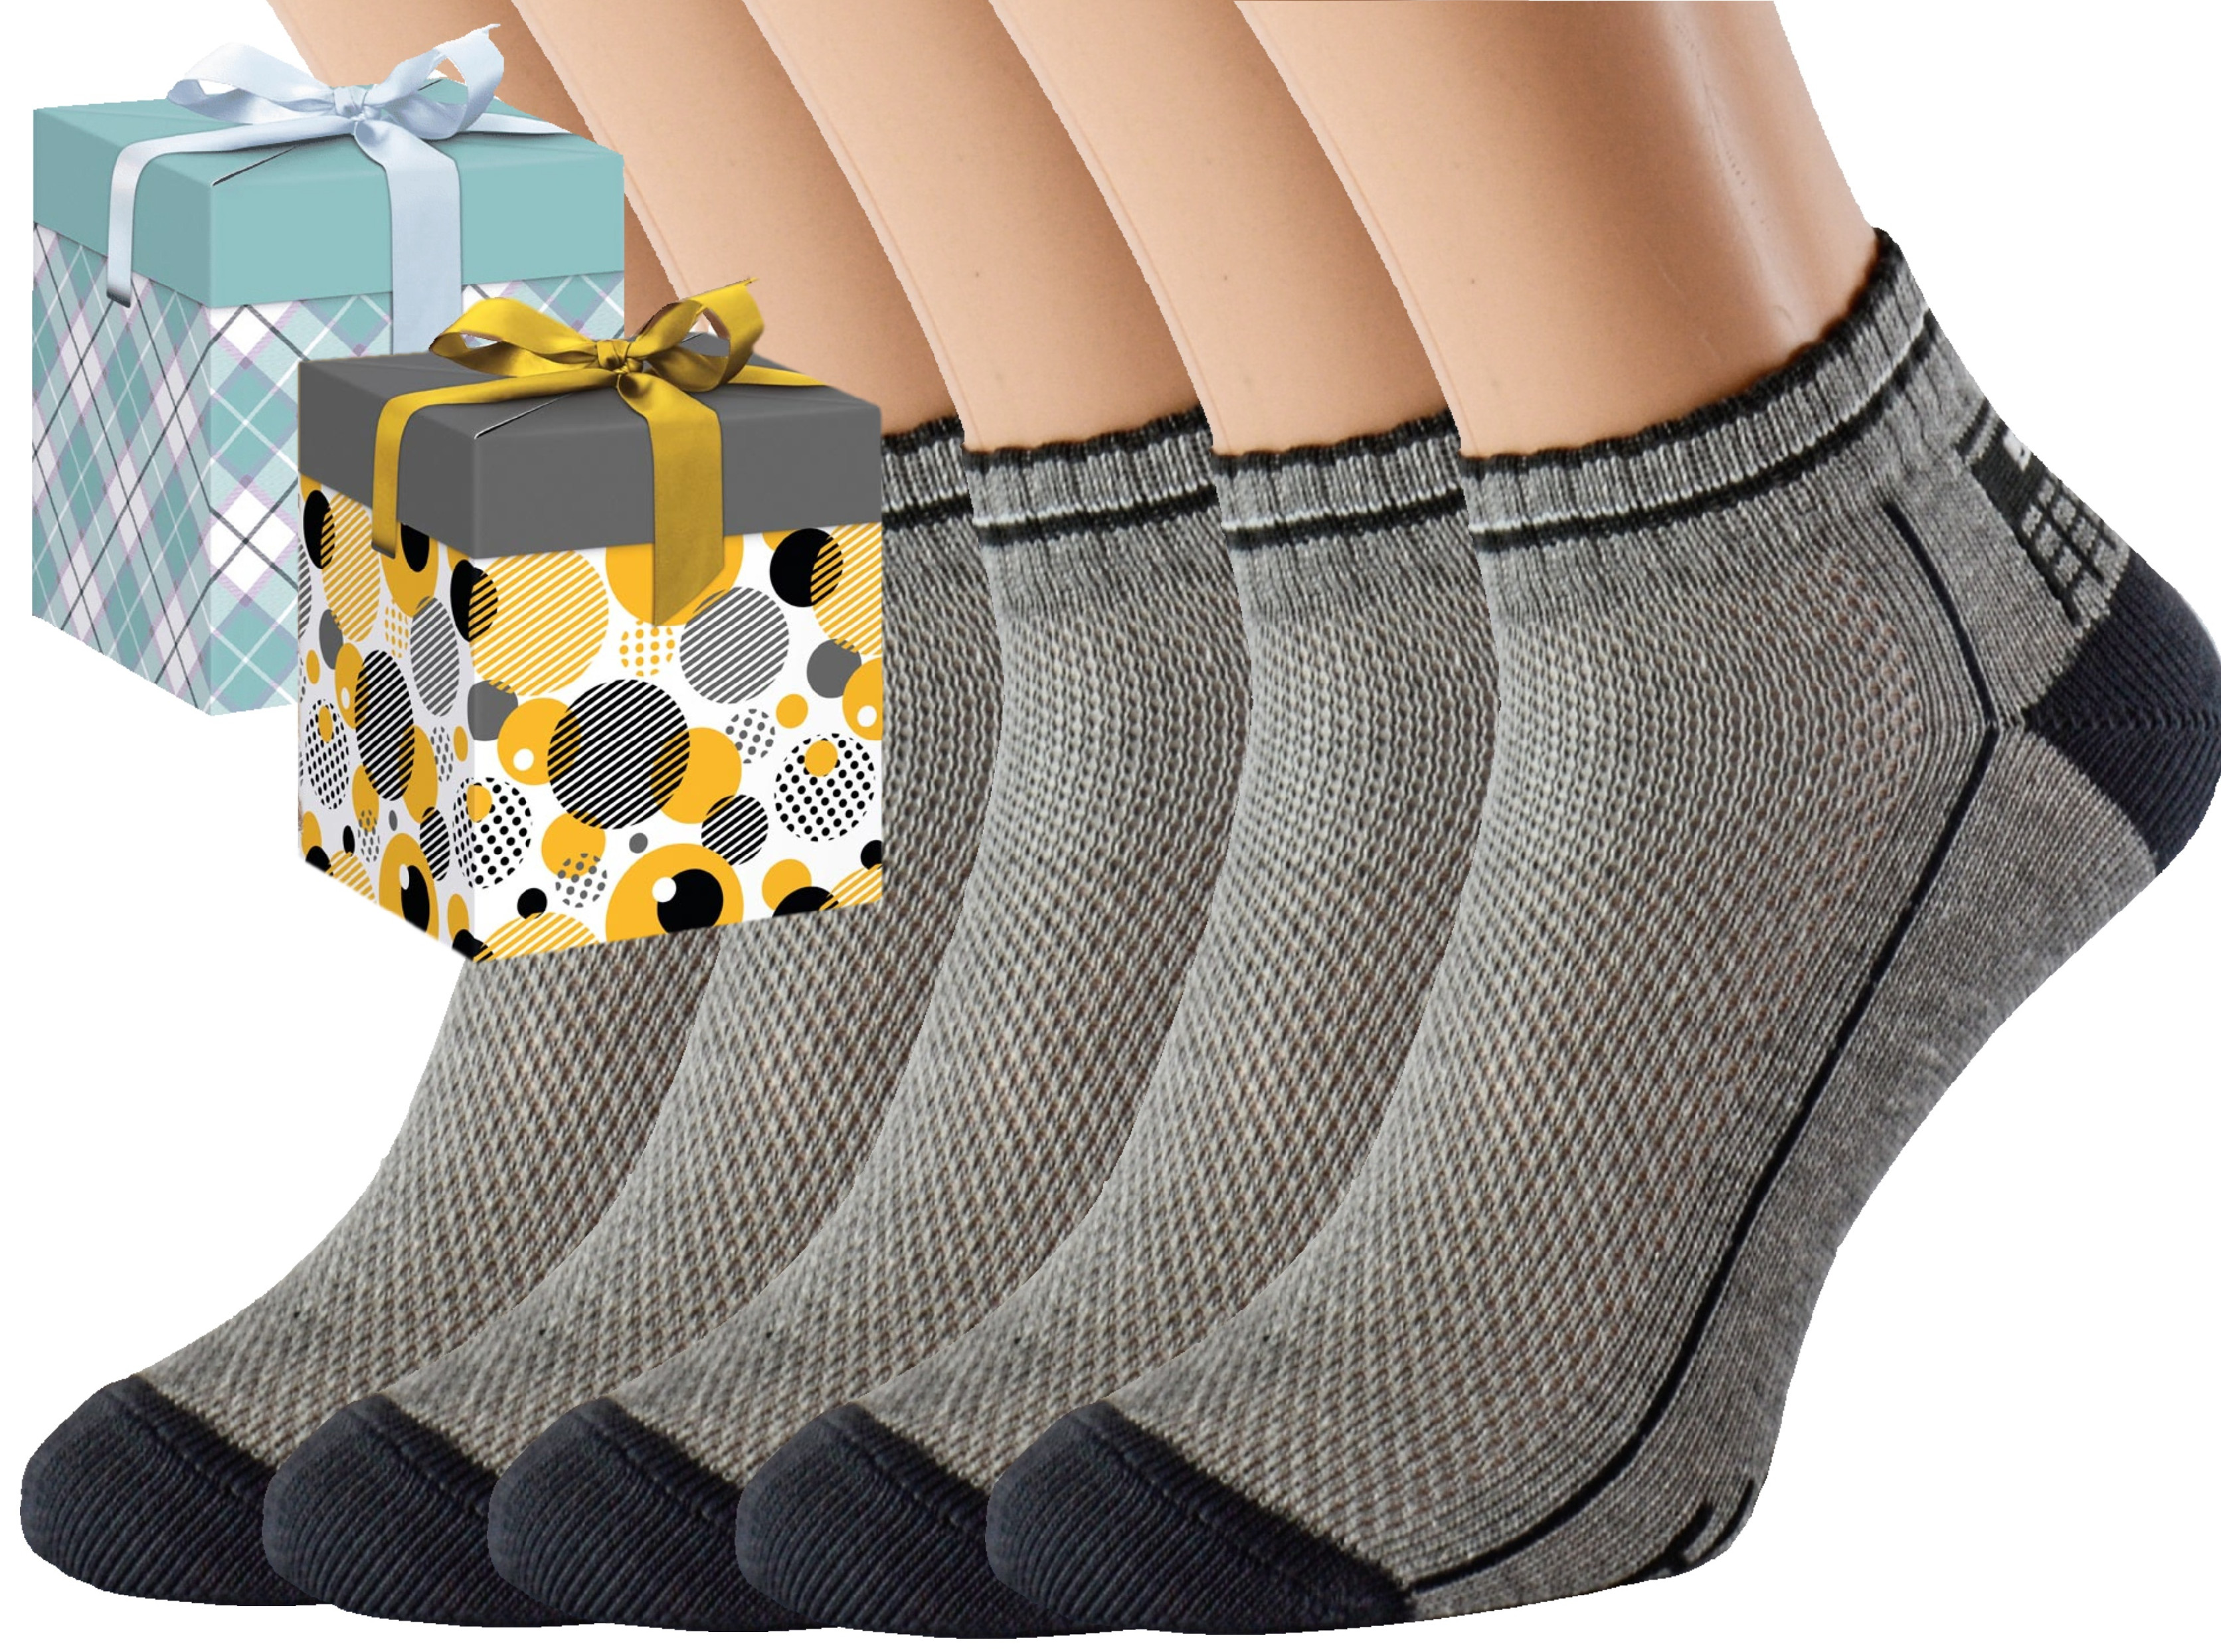 Dárkové balení 5 párů zdravotních ponožek EMIL Barva: Světle šedé, Velikost: EUR 36-38 (UK 4-5), Zvolte variantu dárkového balení: Mint kostkovaná